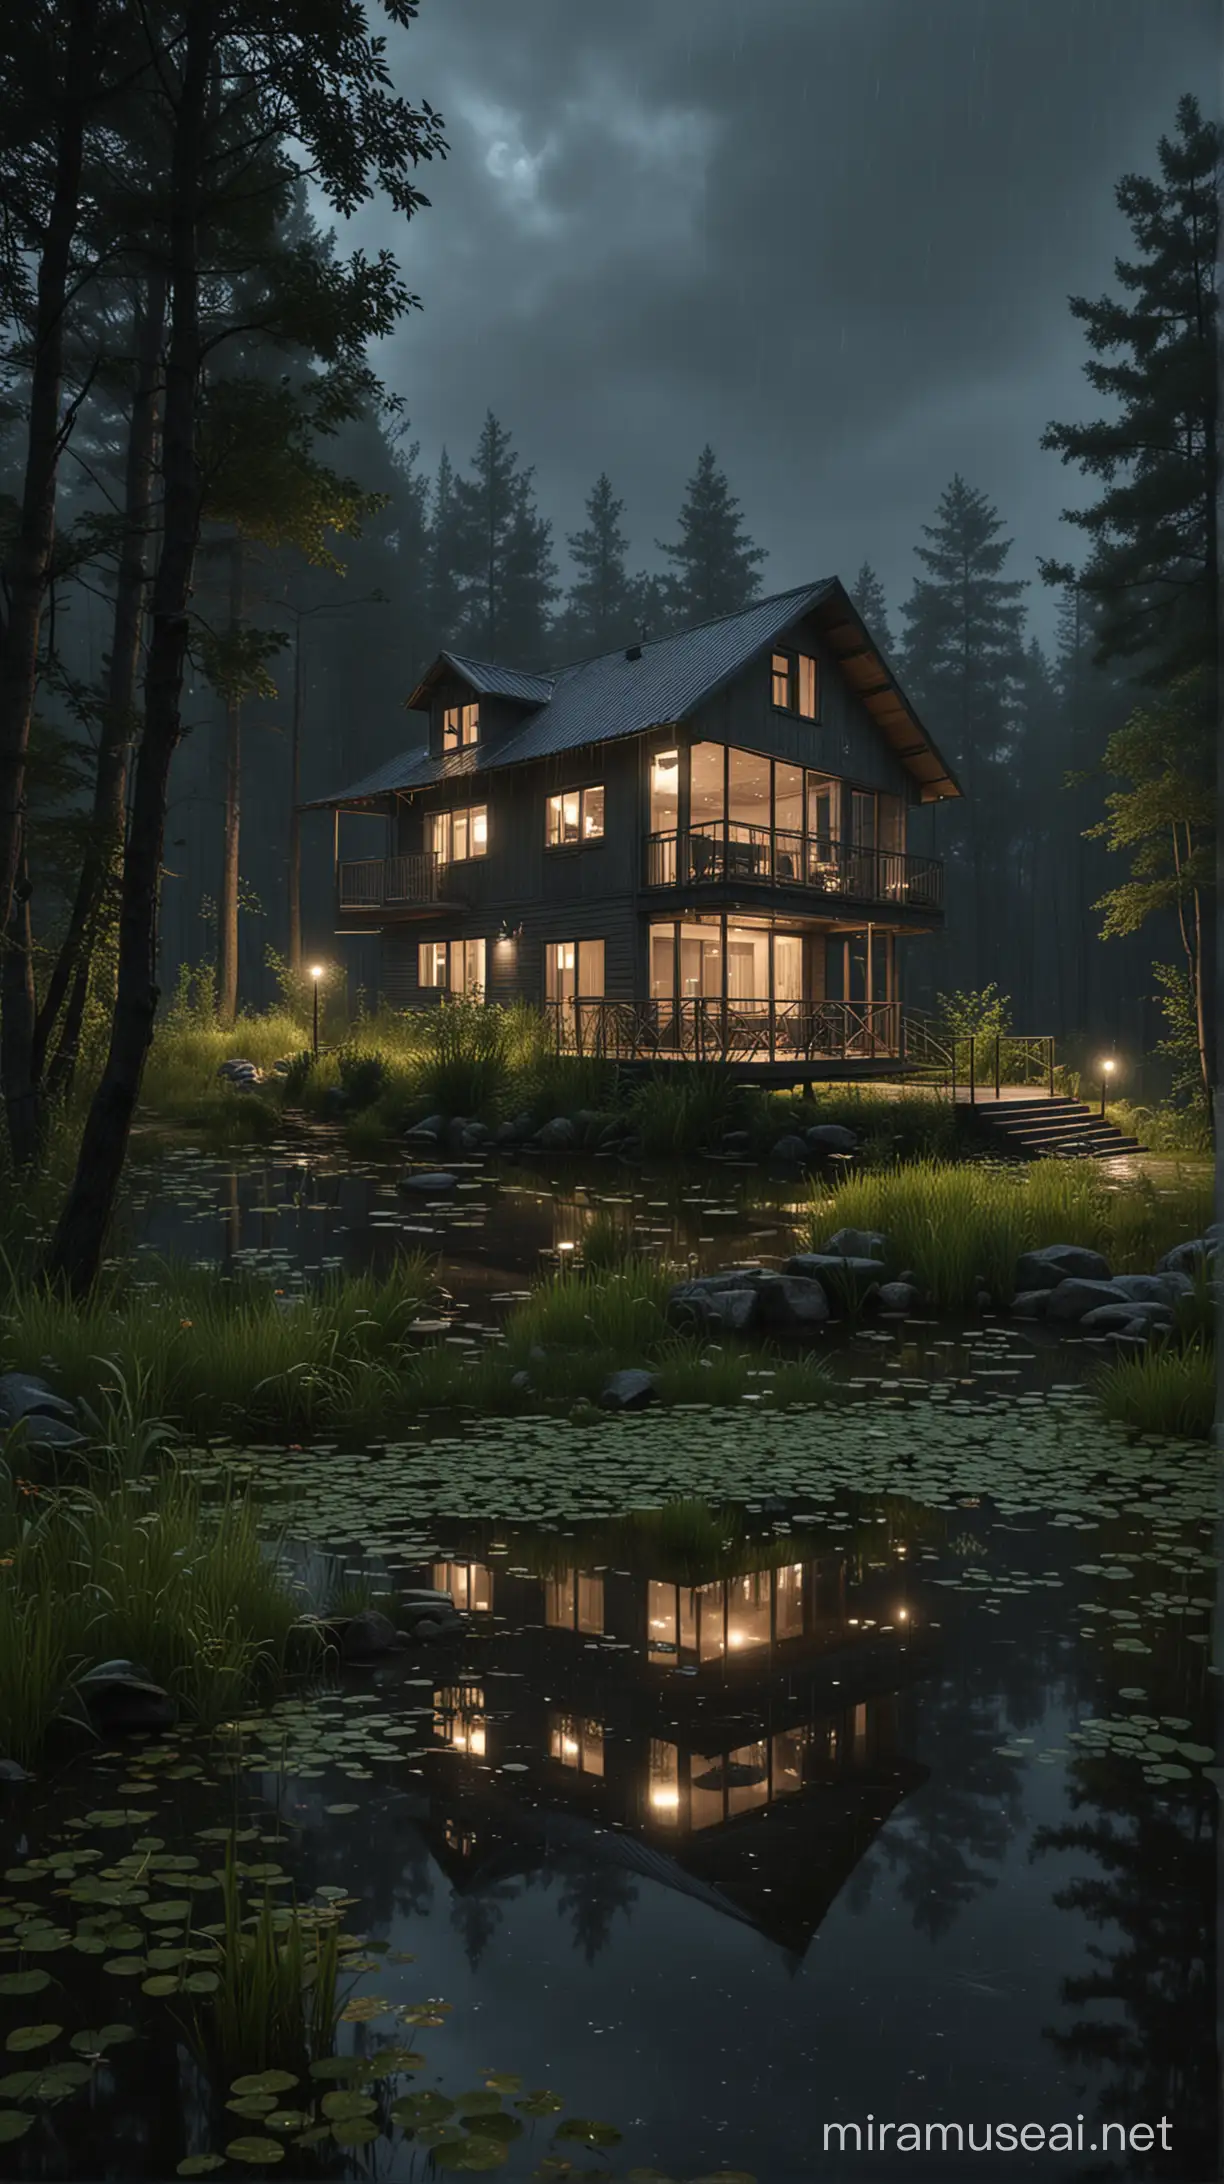 Rumah di hutan ada kolam . Suasana hujan malam tampak mendung langit gelap. Realistic